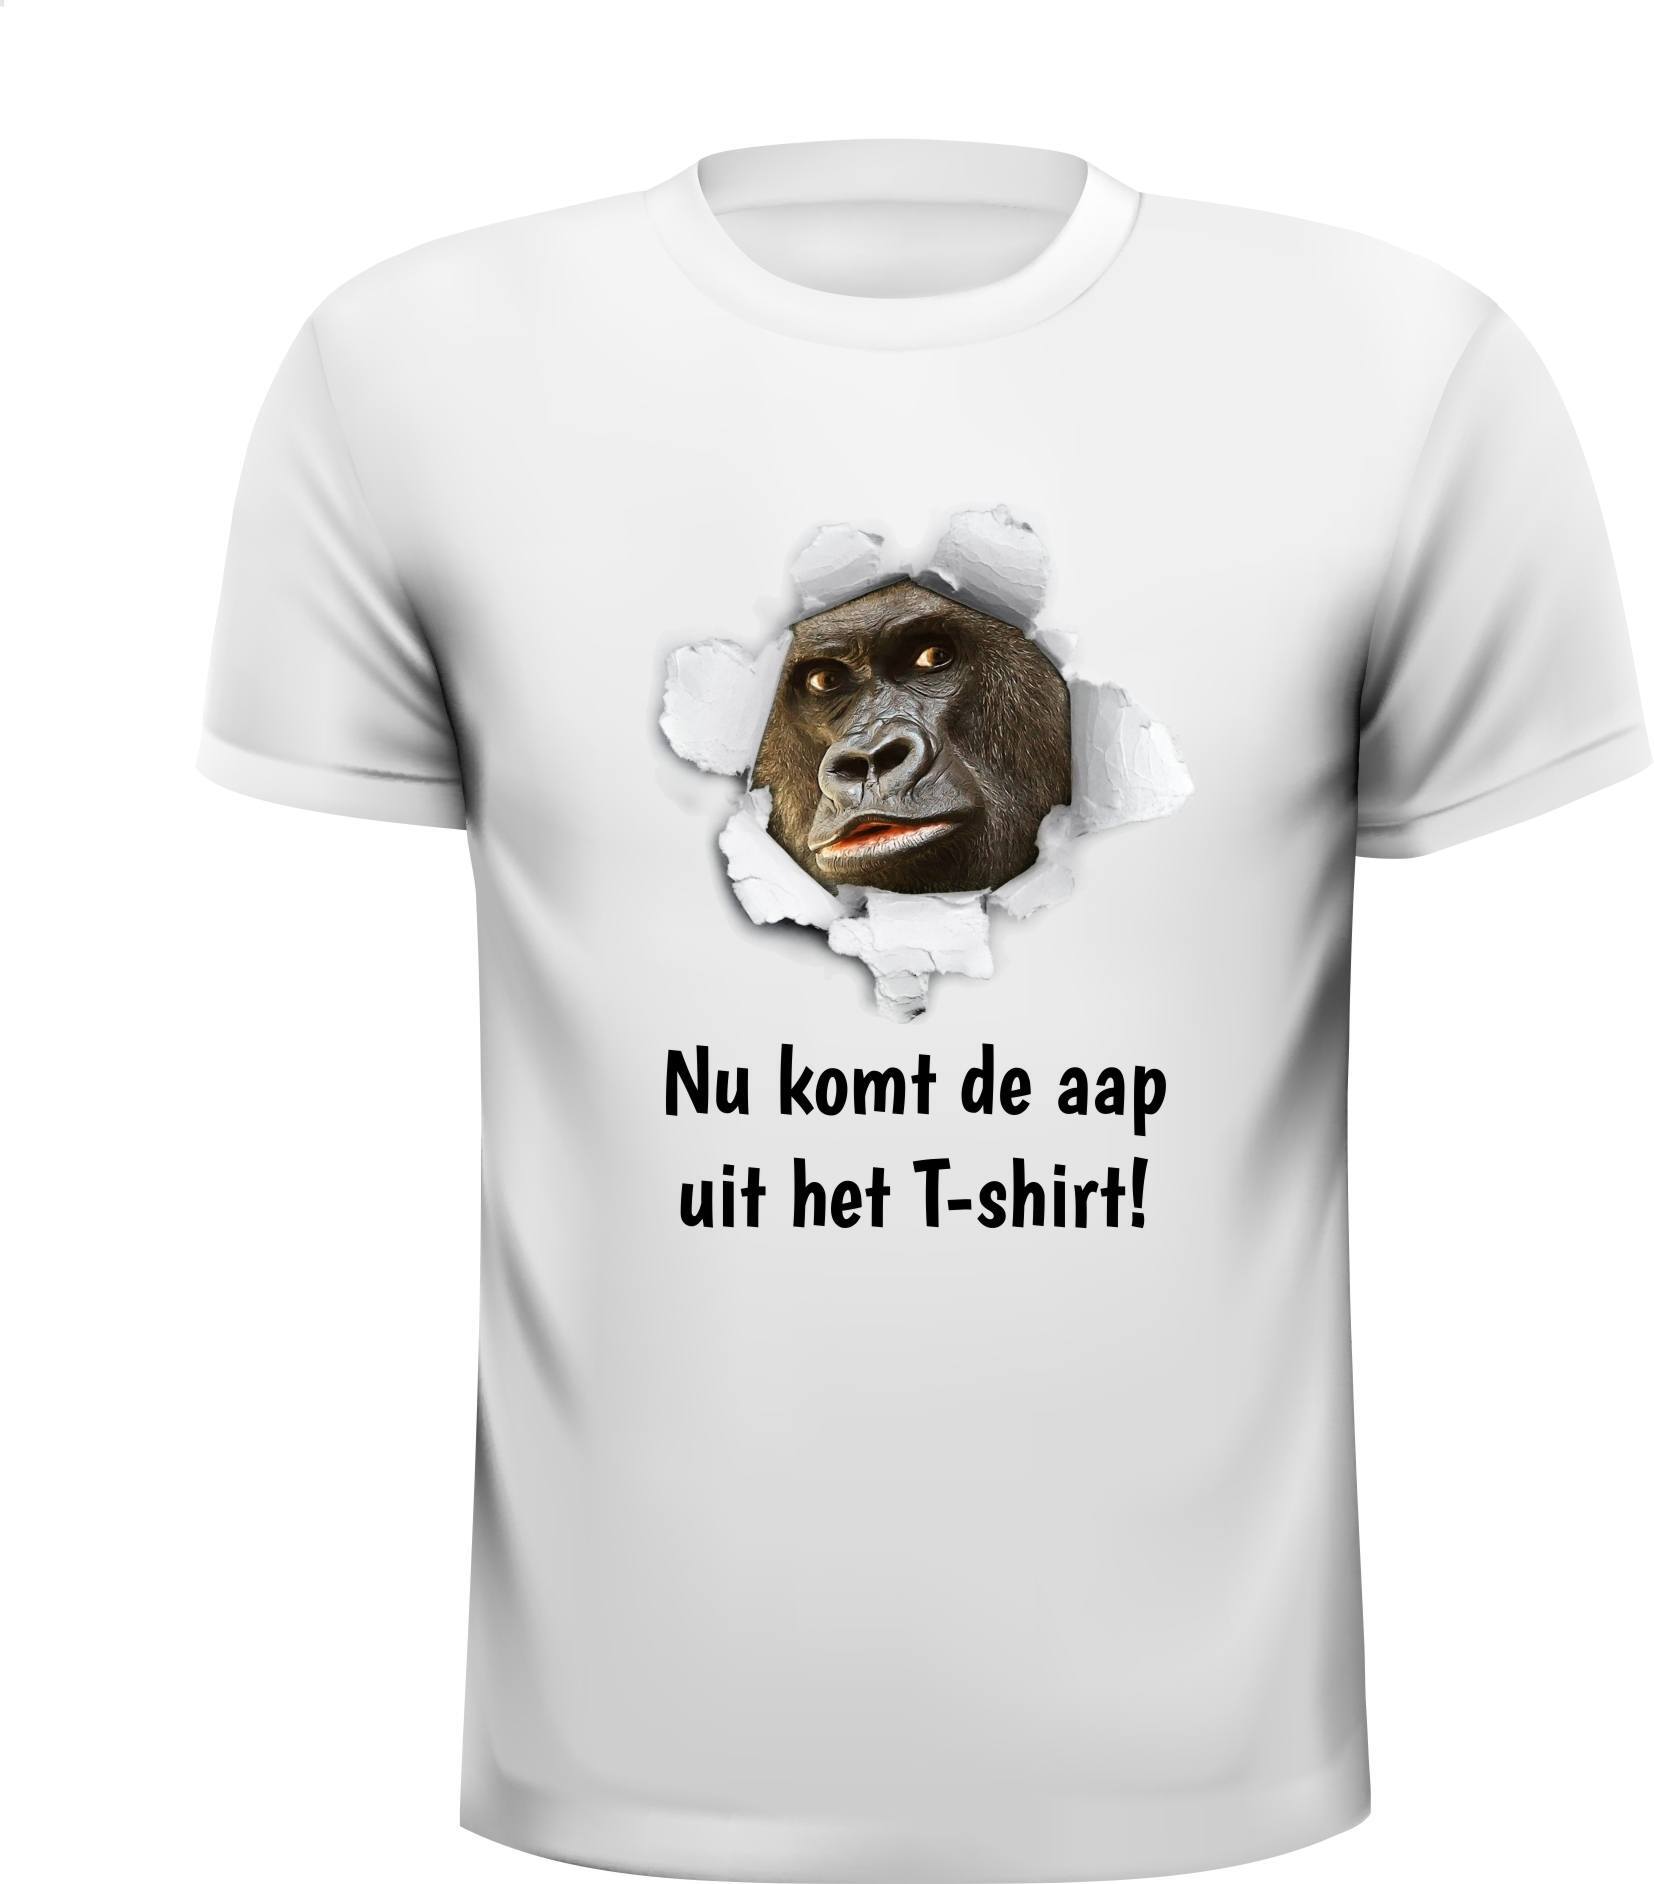 T-shirt Nu komt de aap uit het T-shirt van het spreekwoord Nu komt de aap uit de mouw